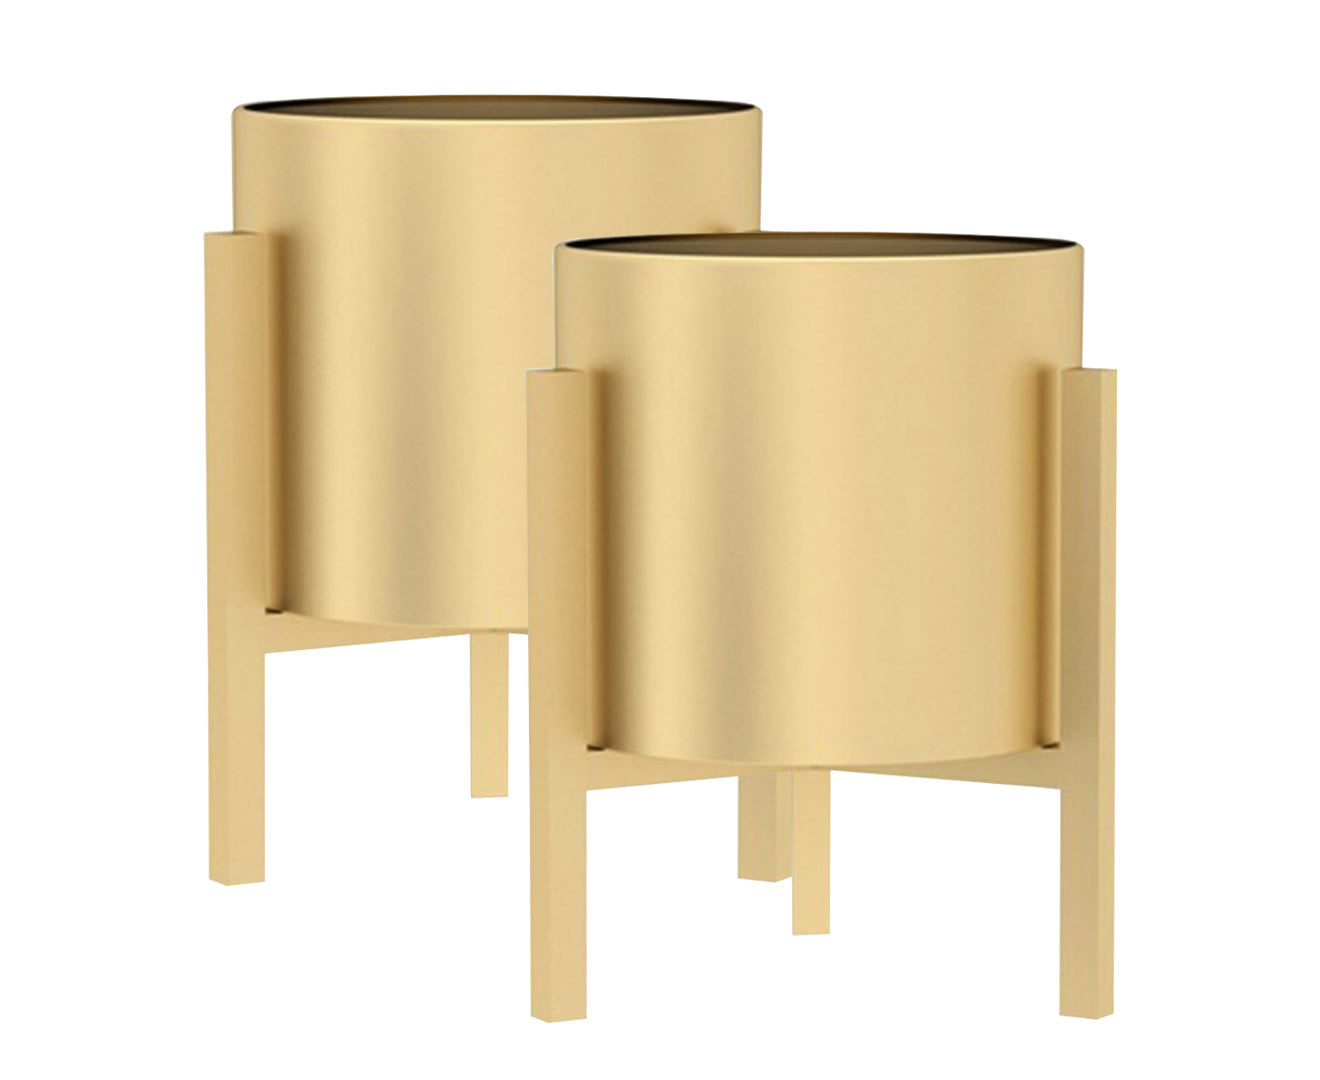 SOGA 2X 30CM Gold Metal Plant Stand with Flower Pot Holder Corner Shelving Rack Indoor Display-Indoor Pots, Planters and Plant Stands-PEROZ Accessories